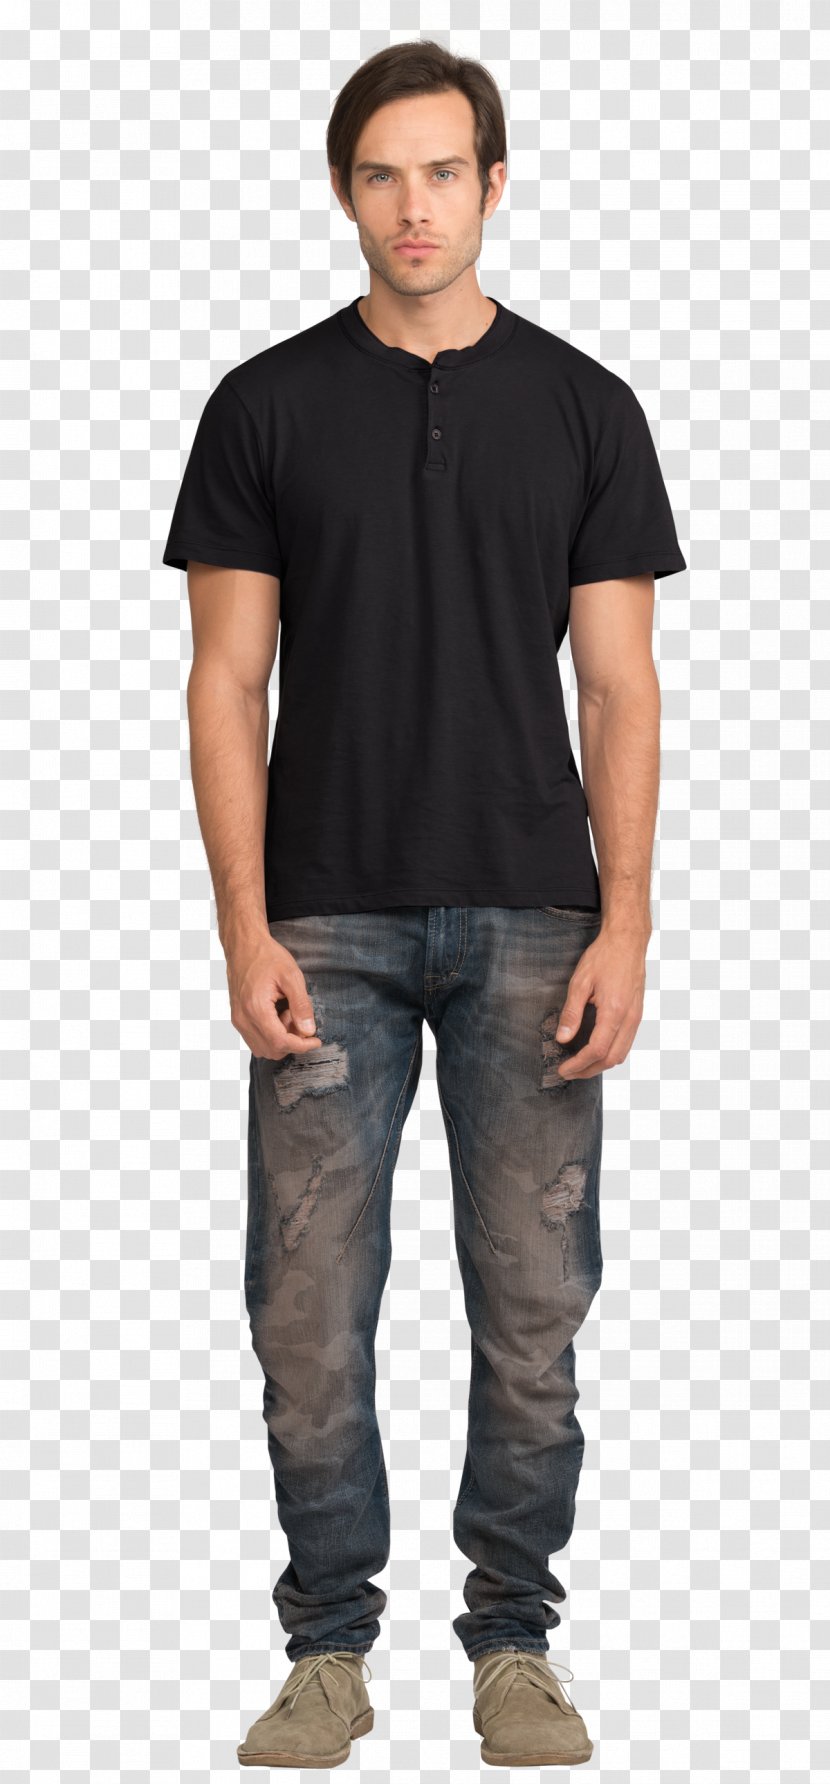 T-shirt Adidas Top Sleeve - Neck - Black Man Transparent PNG